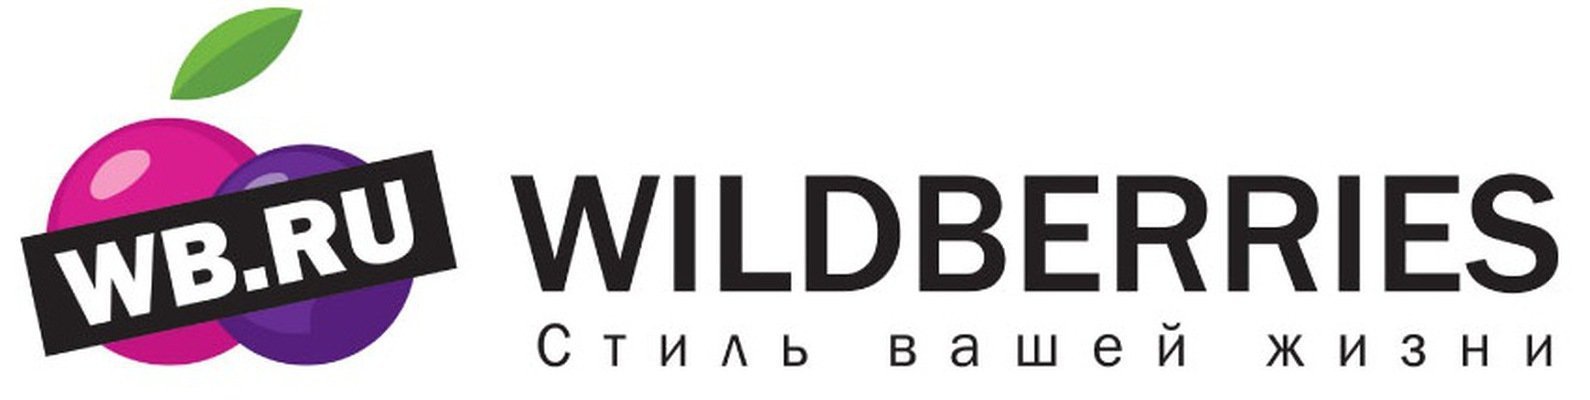 Флаеры вайлдберриз. Wildberries лого. WB логотип вайлдберриз. Надпись Wildberries. Логотип ва.